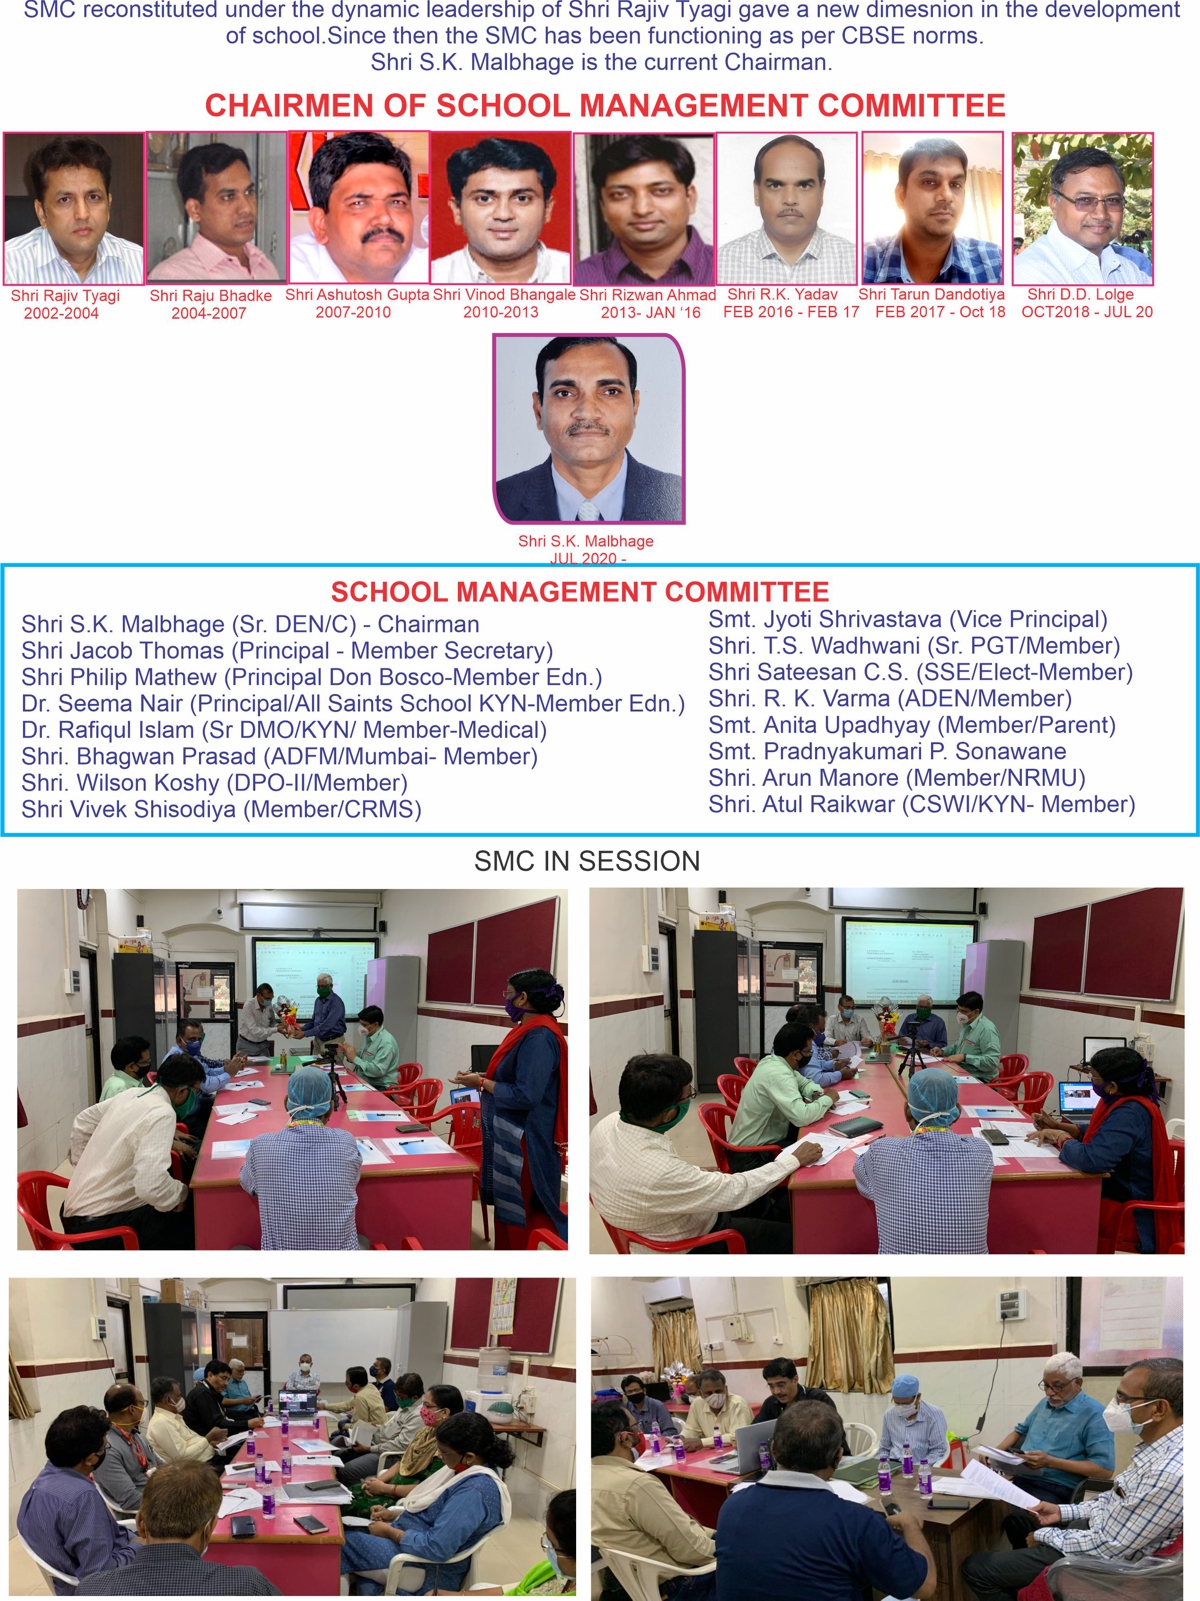 School managment committee